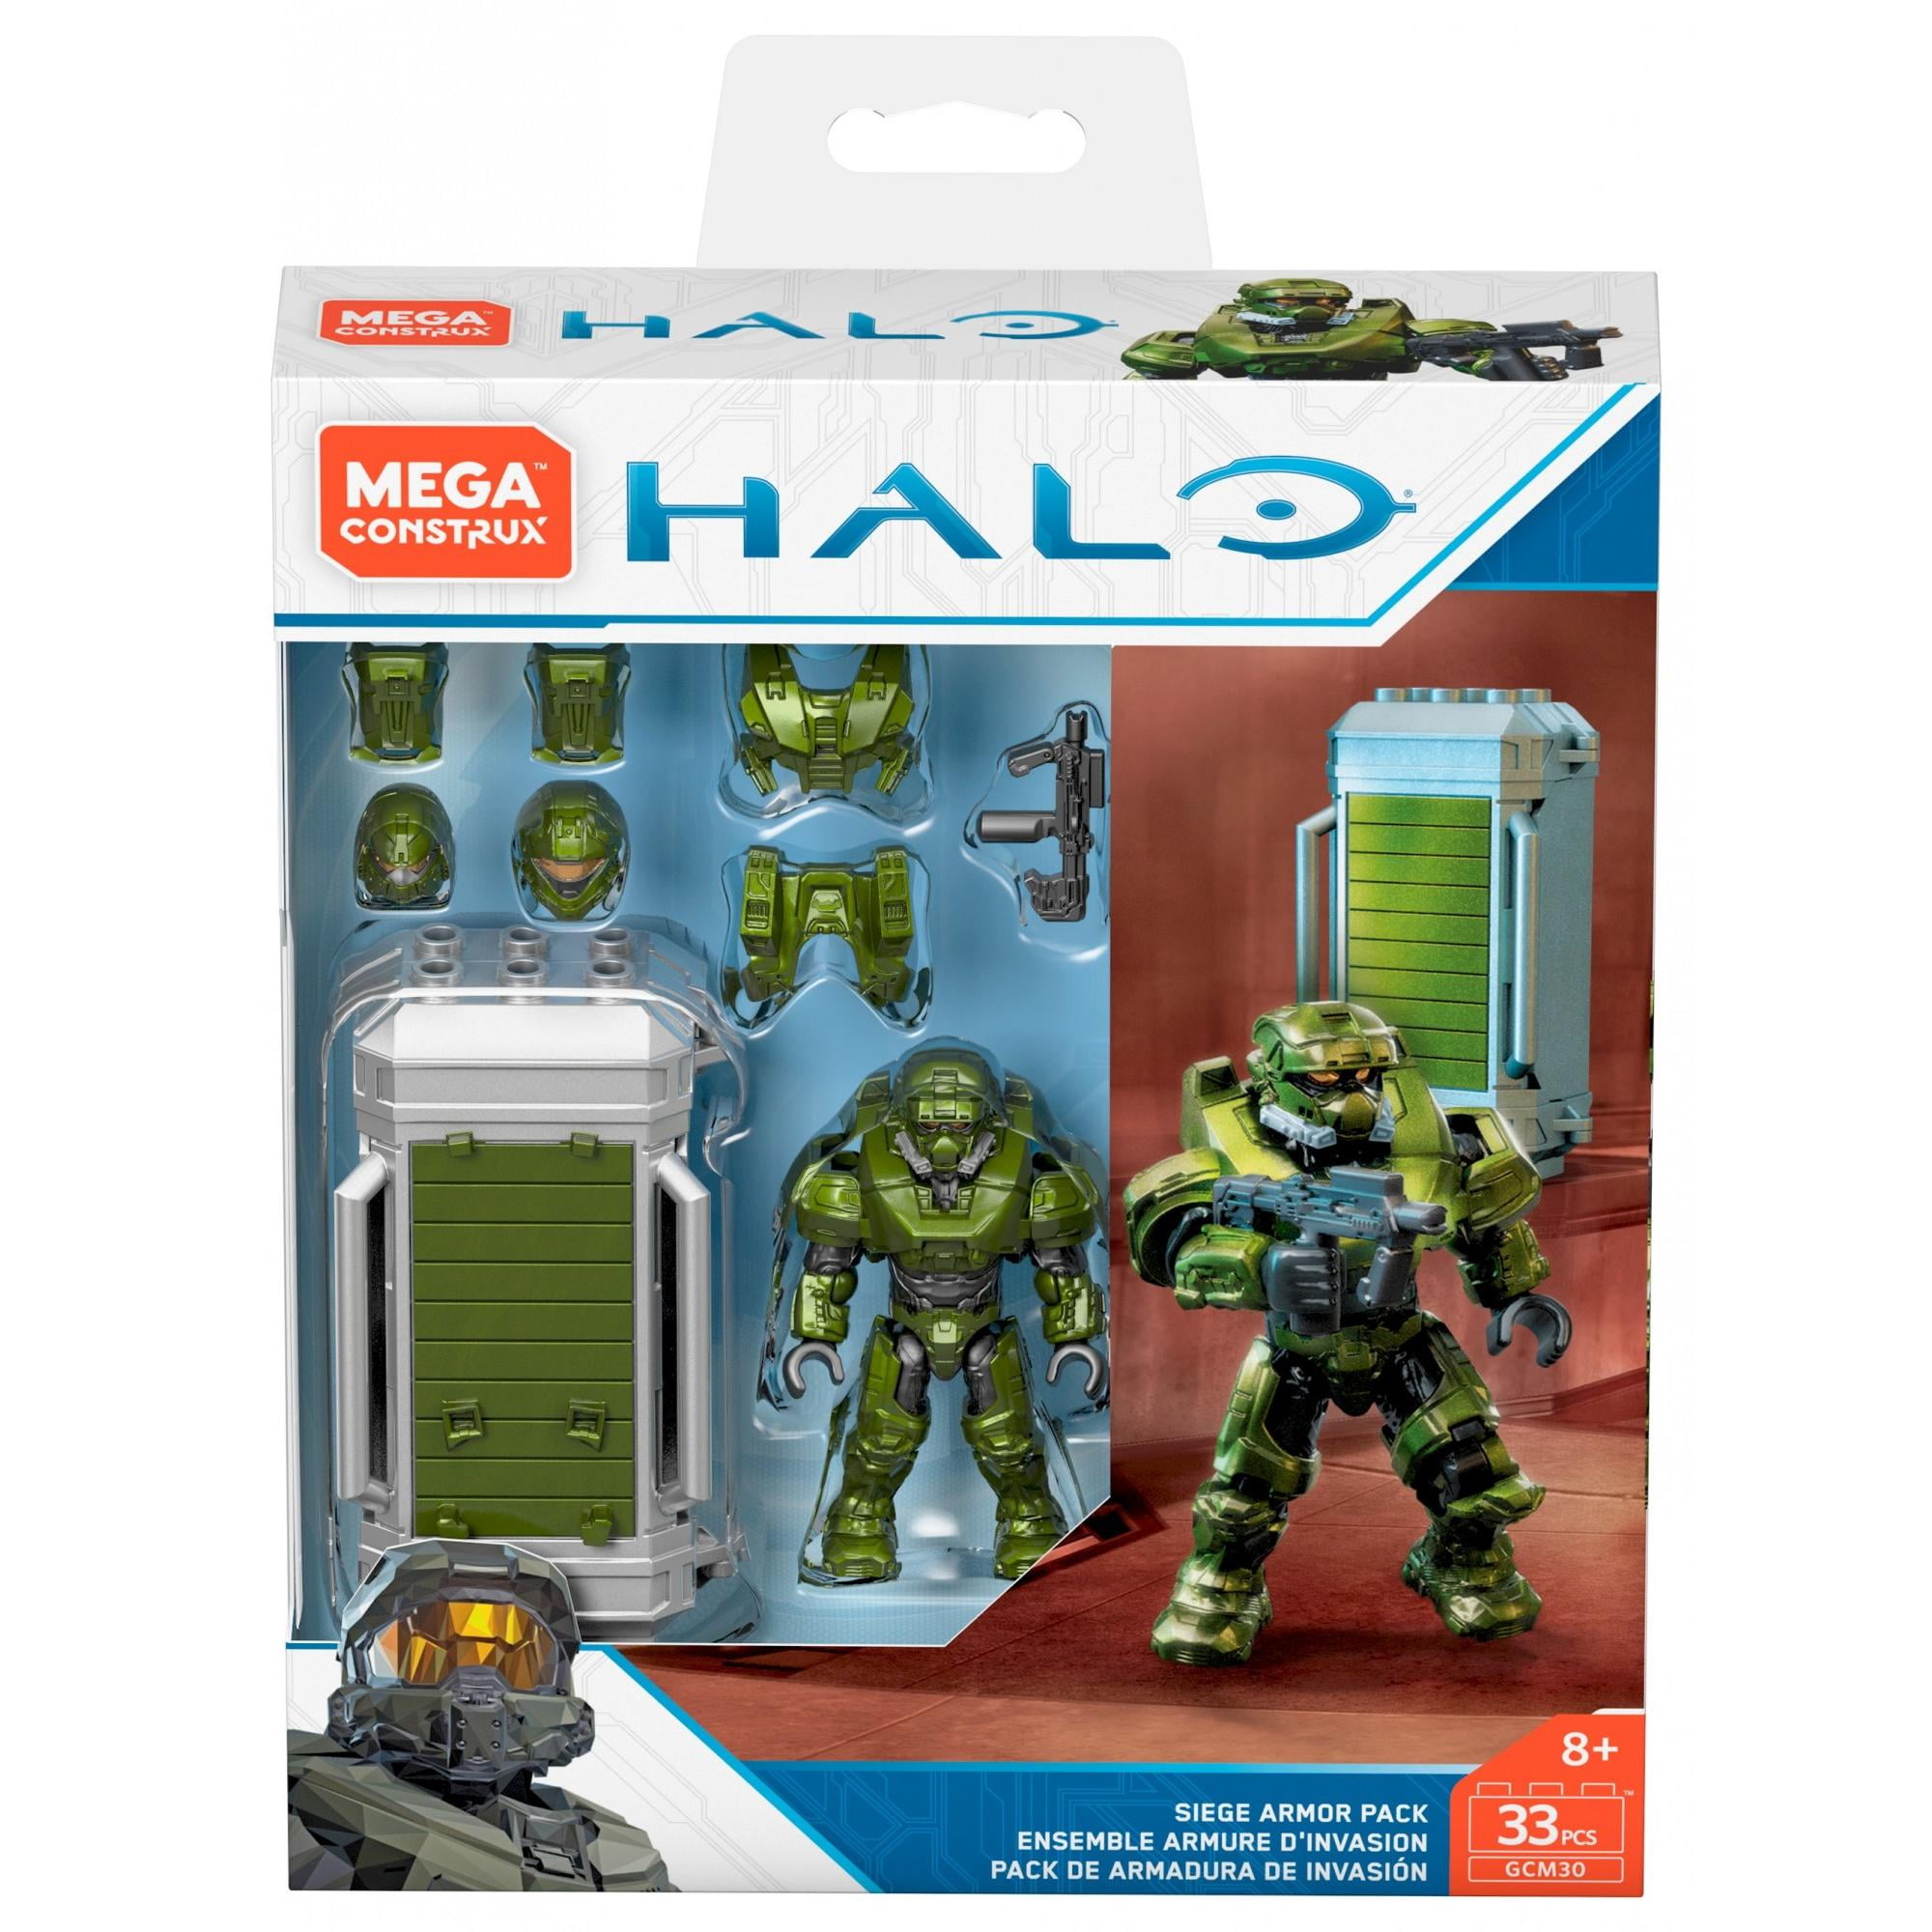 MEGA Construx Halo Siege Armor Pack GCM30 33 Pieces for sale online 